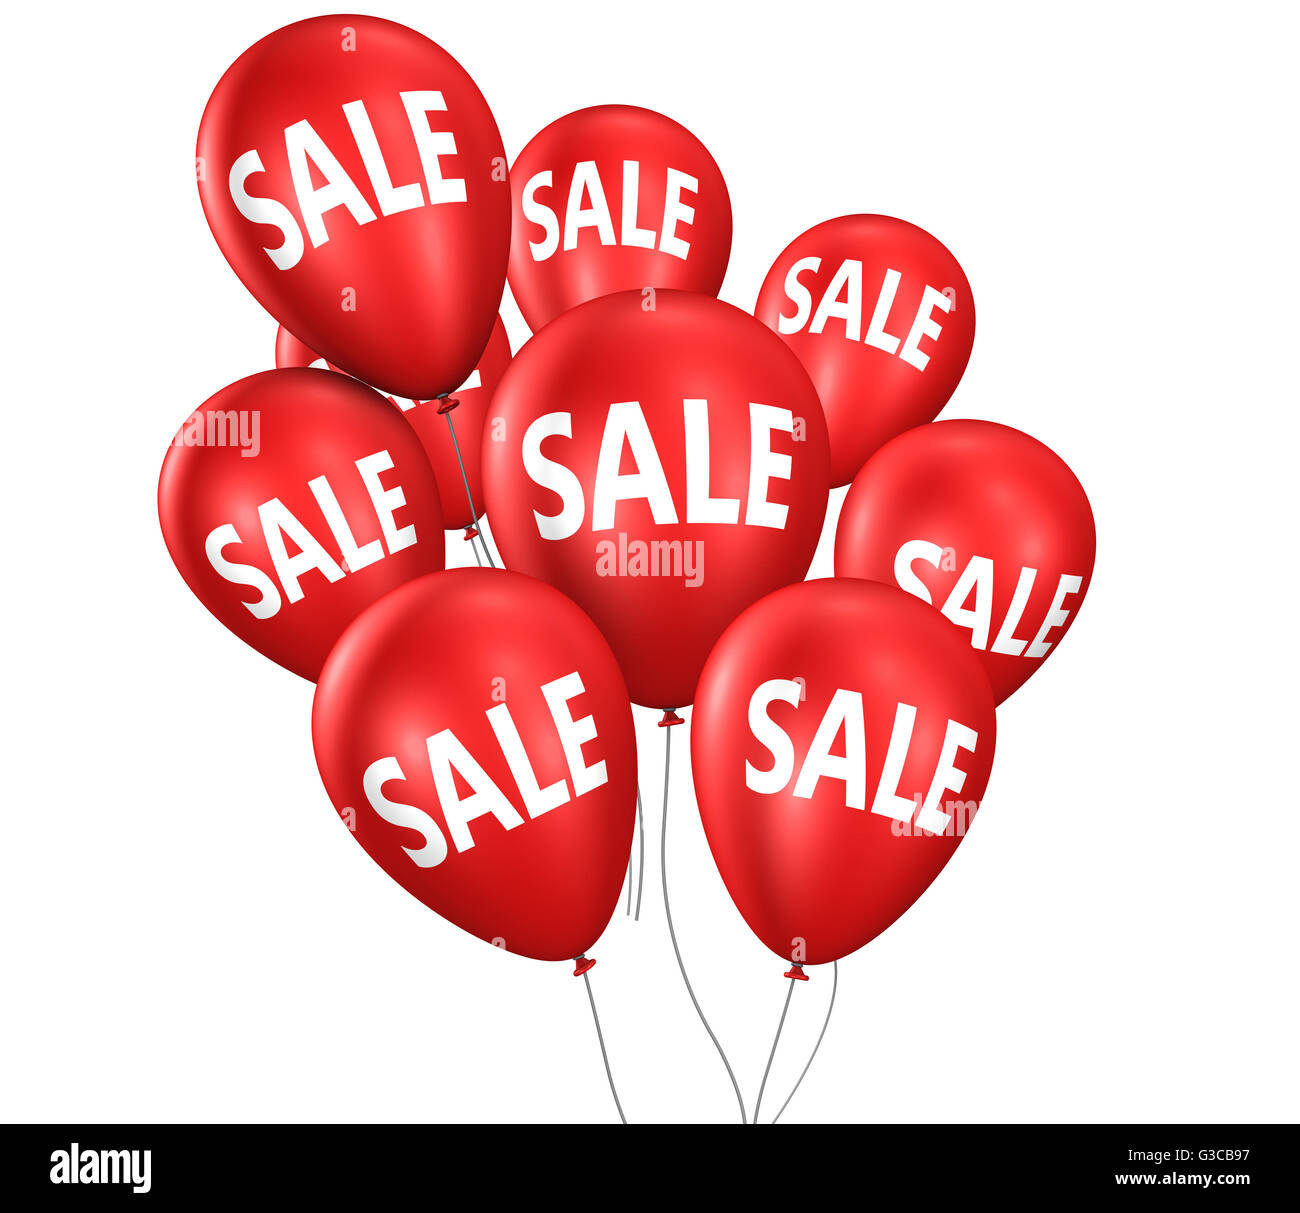 Ventes et achats discount promo avec vente et signer le texte sur ballons flottant rouge illustration isolé sur fond blanc. Banque D'Images